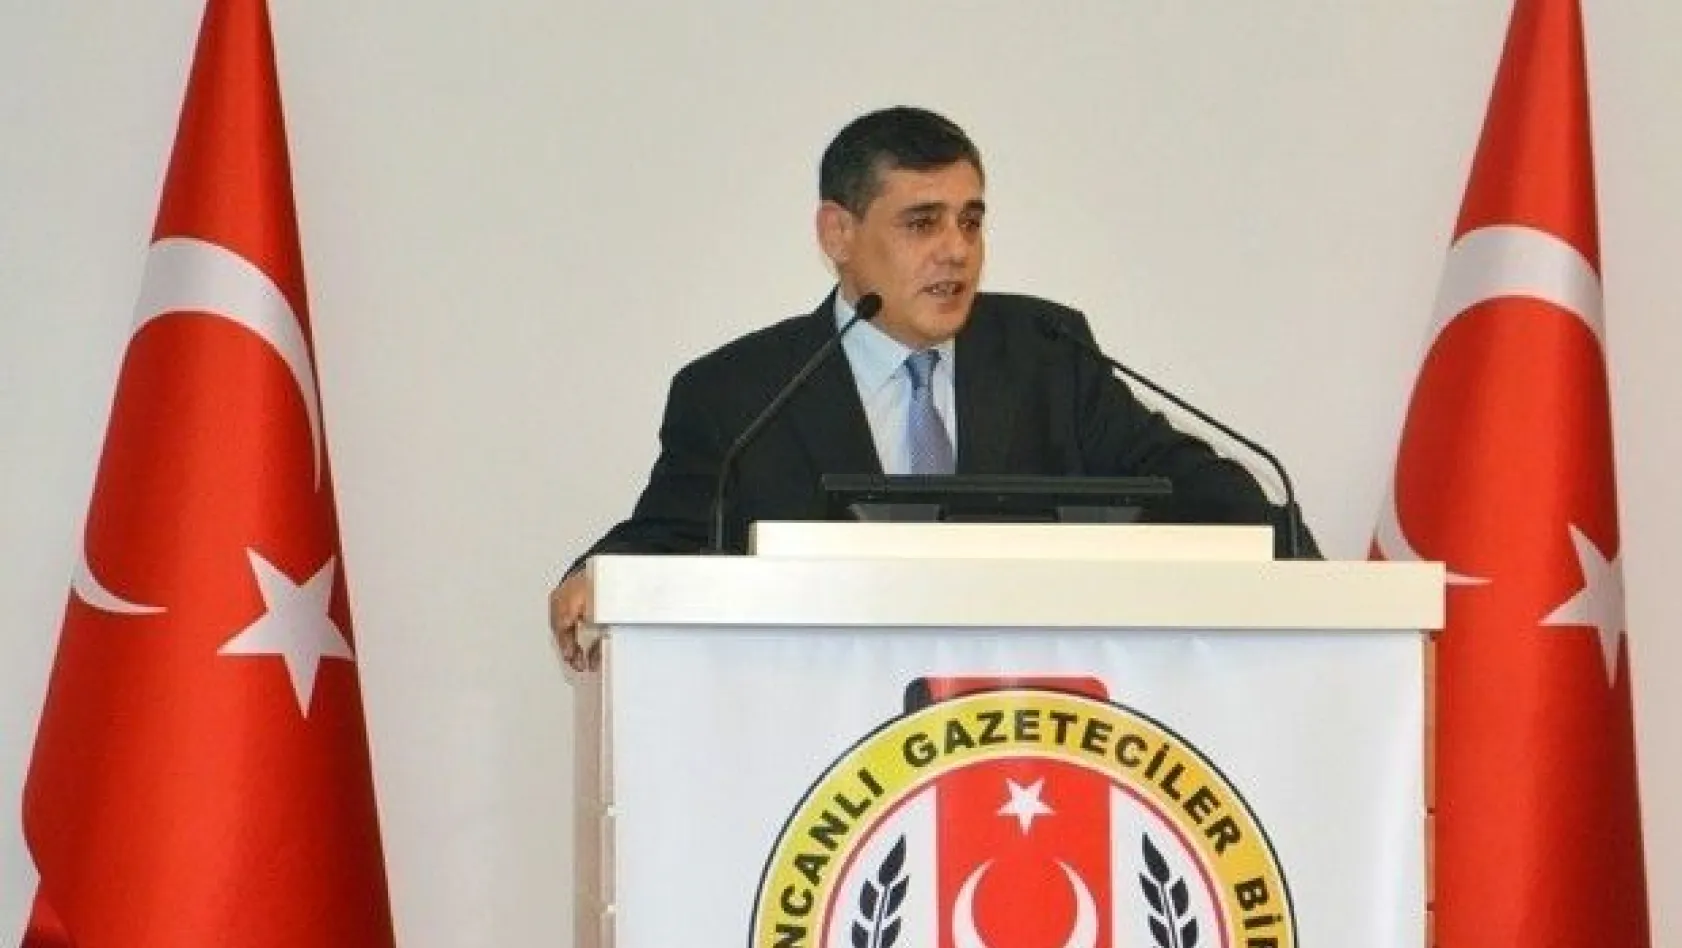 Erzincanlı Gazeteciler Birliği başkanını seçti
